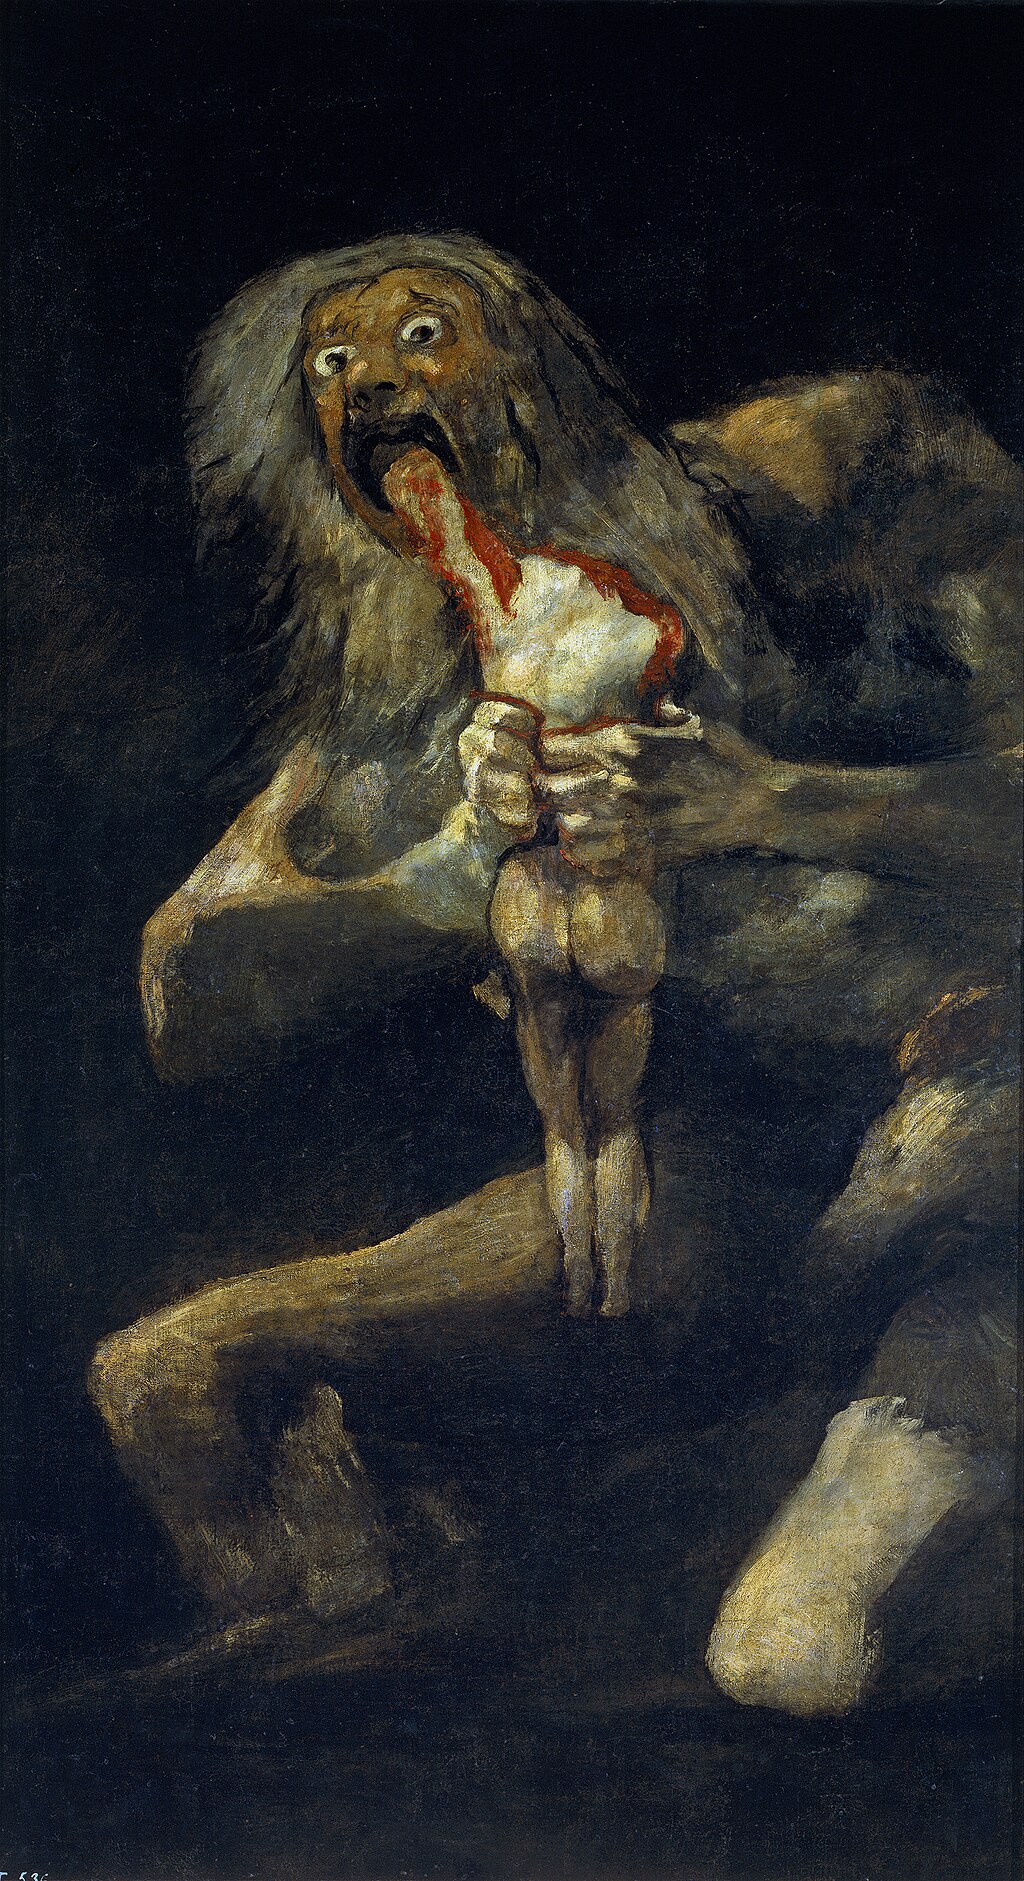 Saturno devorando a su hijo de Francisco Goya - Obras maestras del Prado